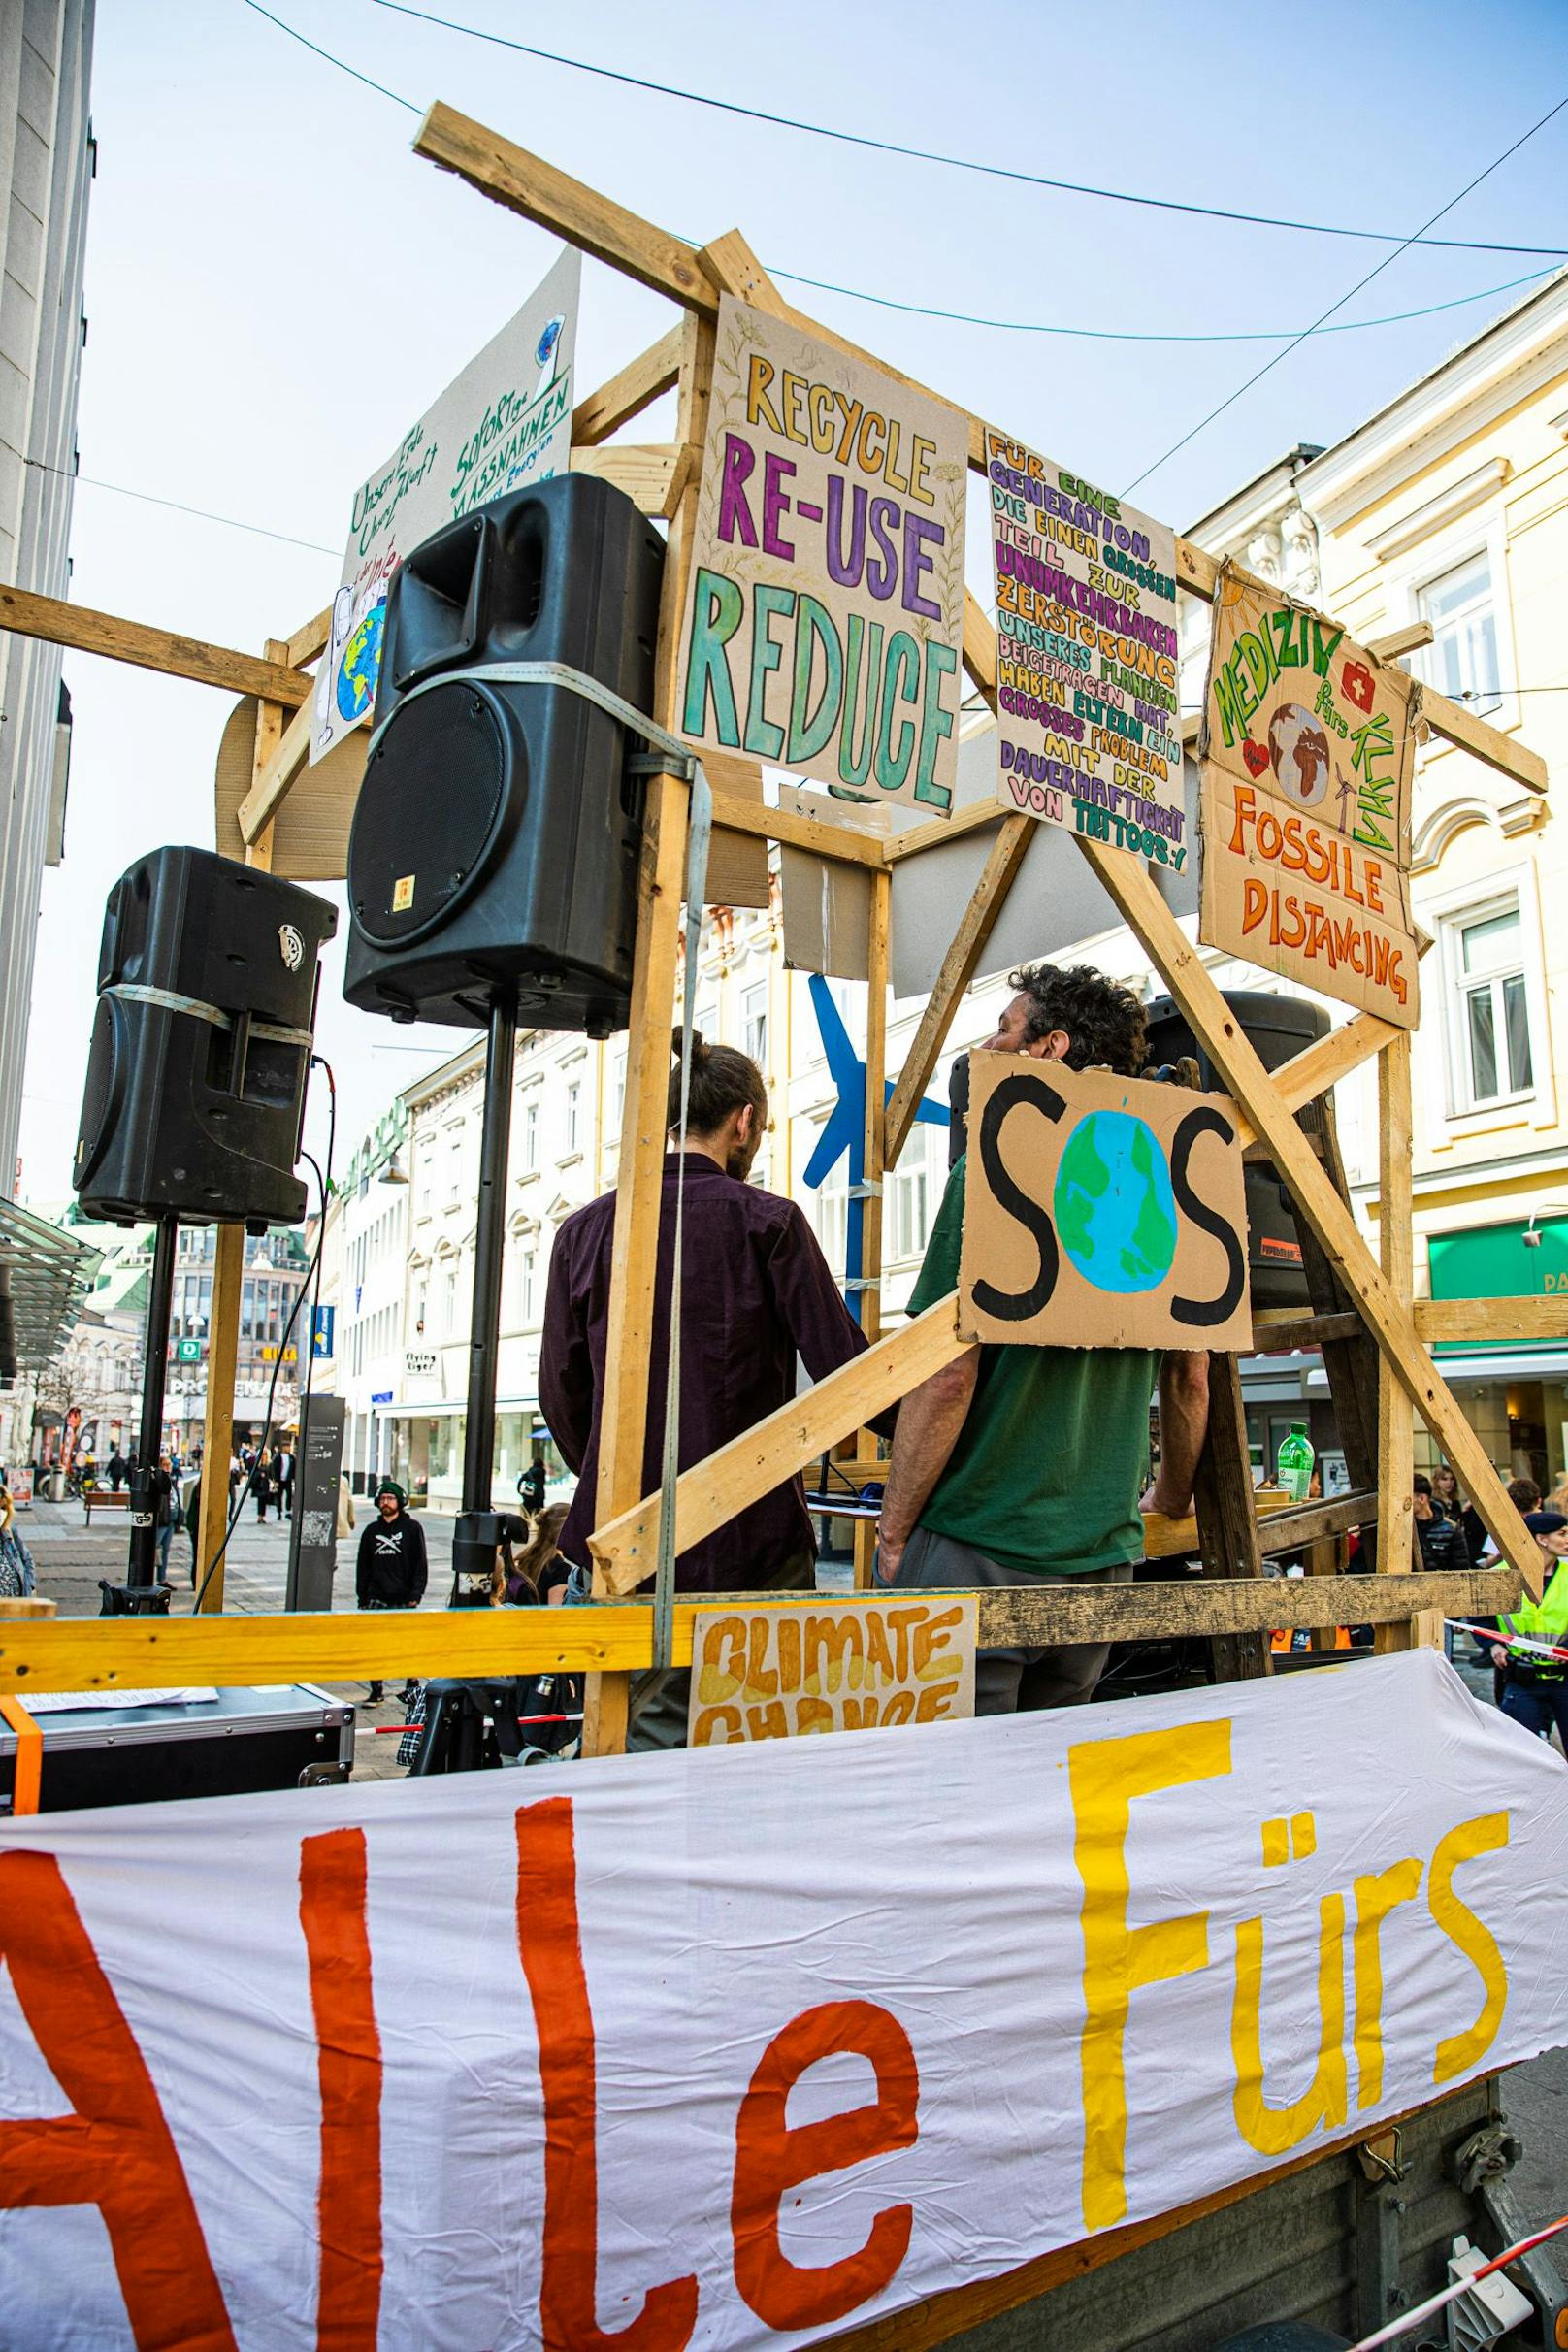 FFF NÖ fordert die niederösterreichische Politik auf aus Öl und Gas auszusteigen und erneuerbare Energien auszubauen.